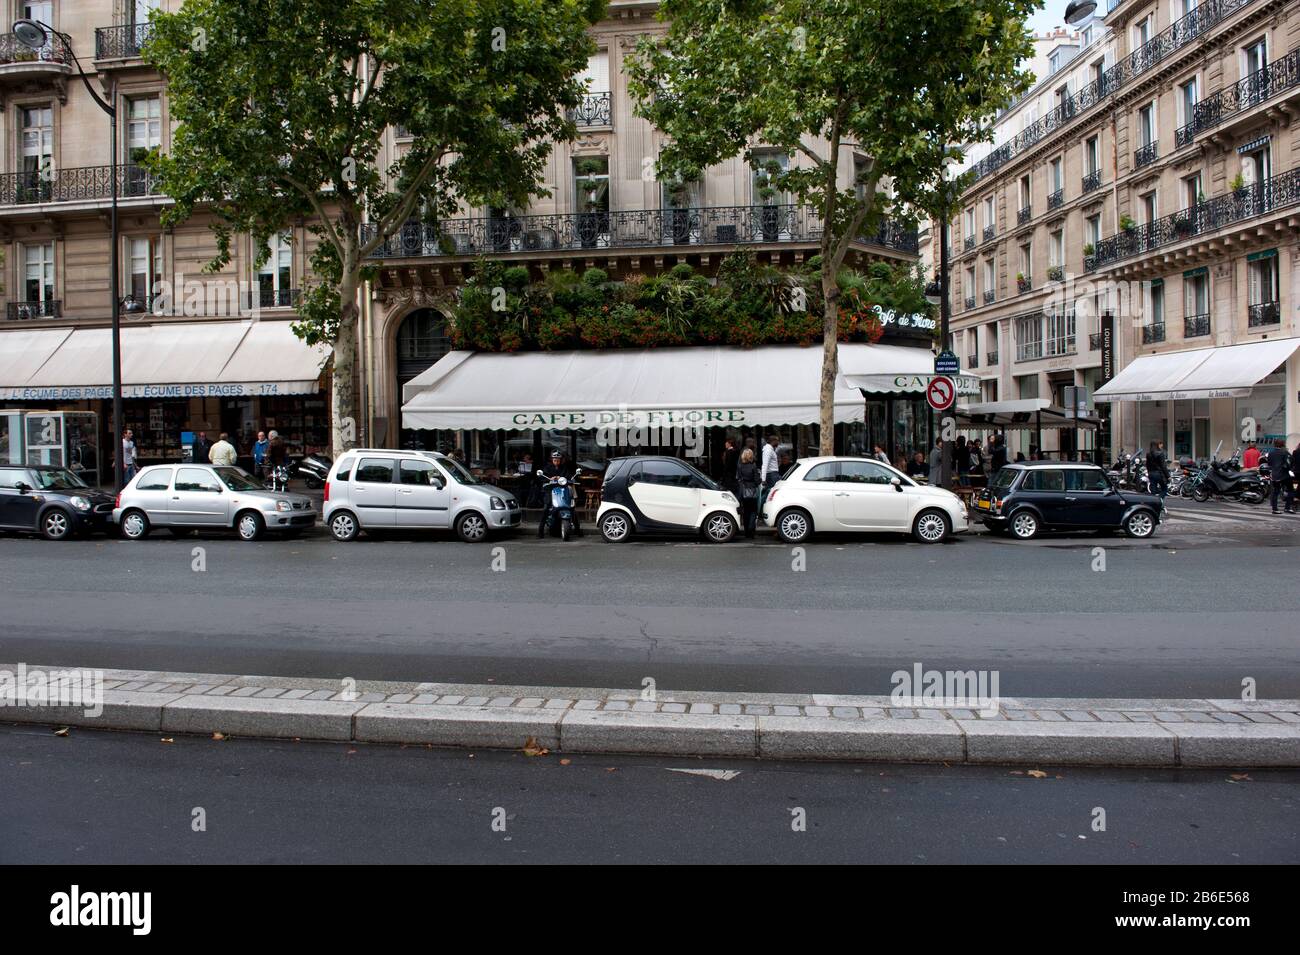 Cars parked in front of a cafe, Cafe de Flore, Boulevard St. Germain, Paris, Ile-de-France, France Stock Photo